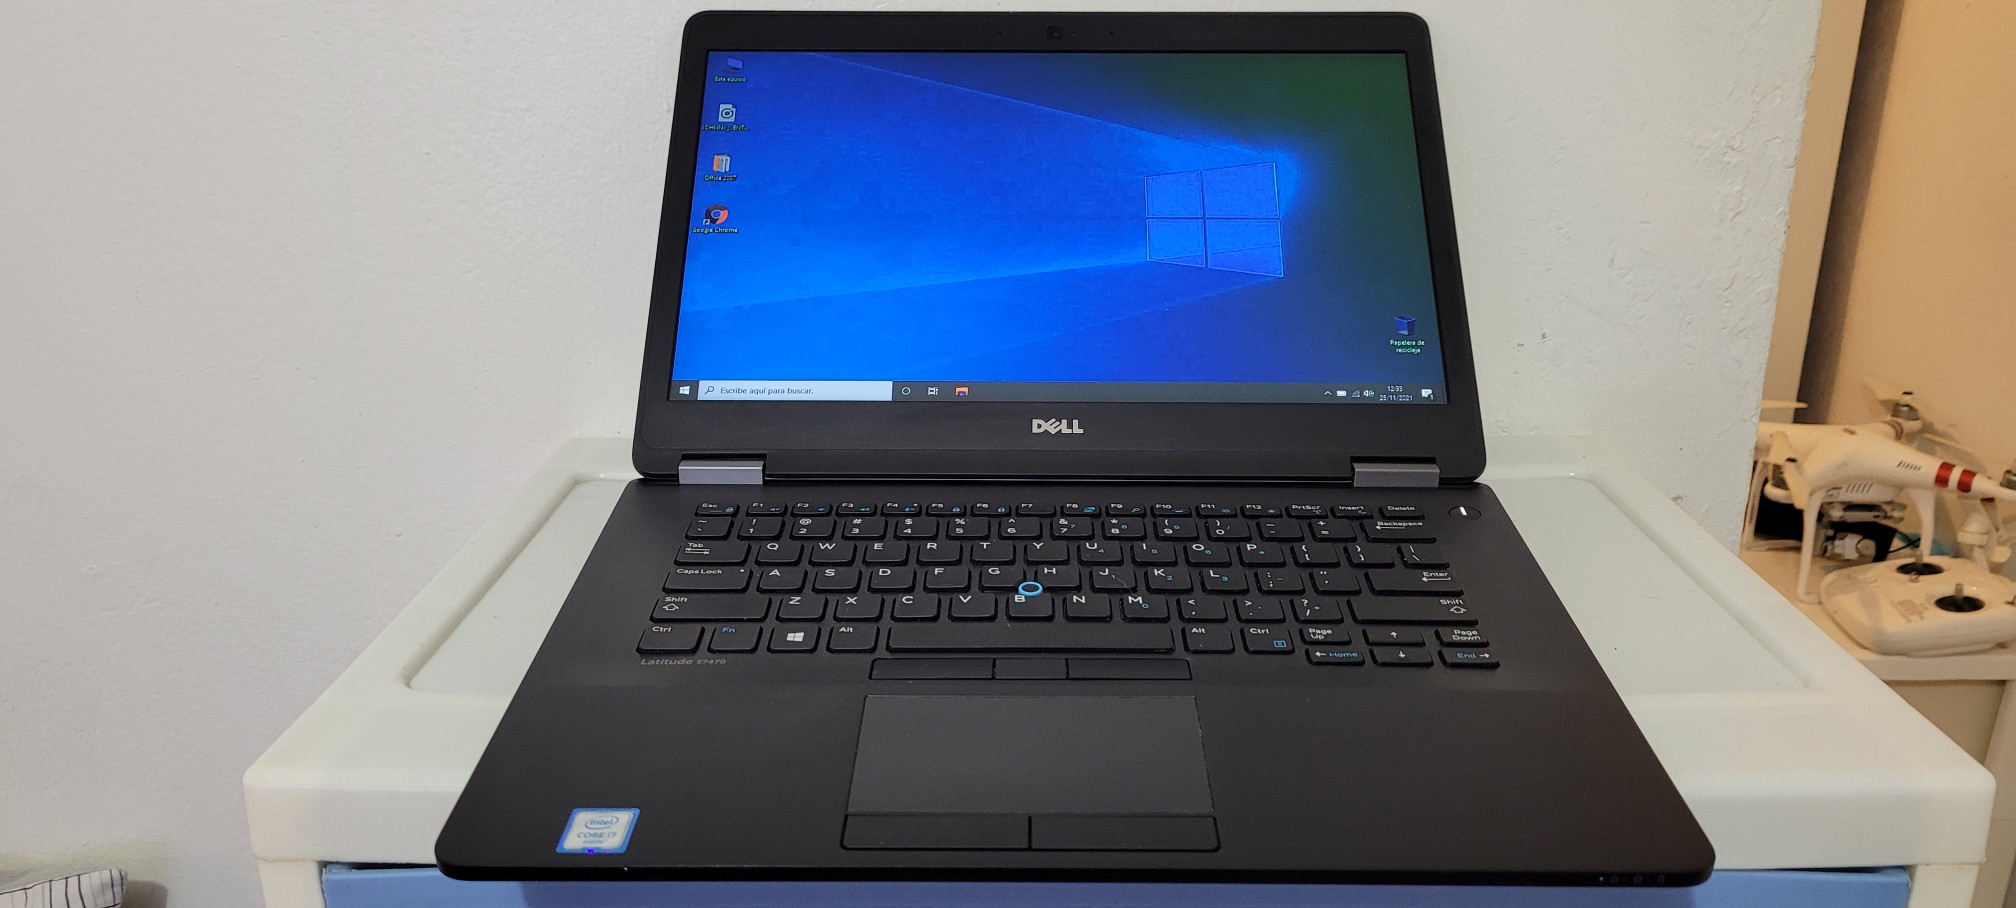 computadoras y laptops - Dell 7470 14 Pulg Core i5 7ma Gen Ram 8gb ddr4 Disco 128gb SSD Full 1080p